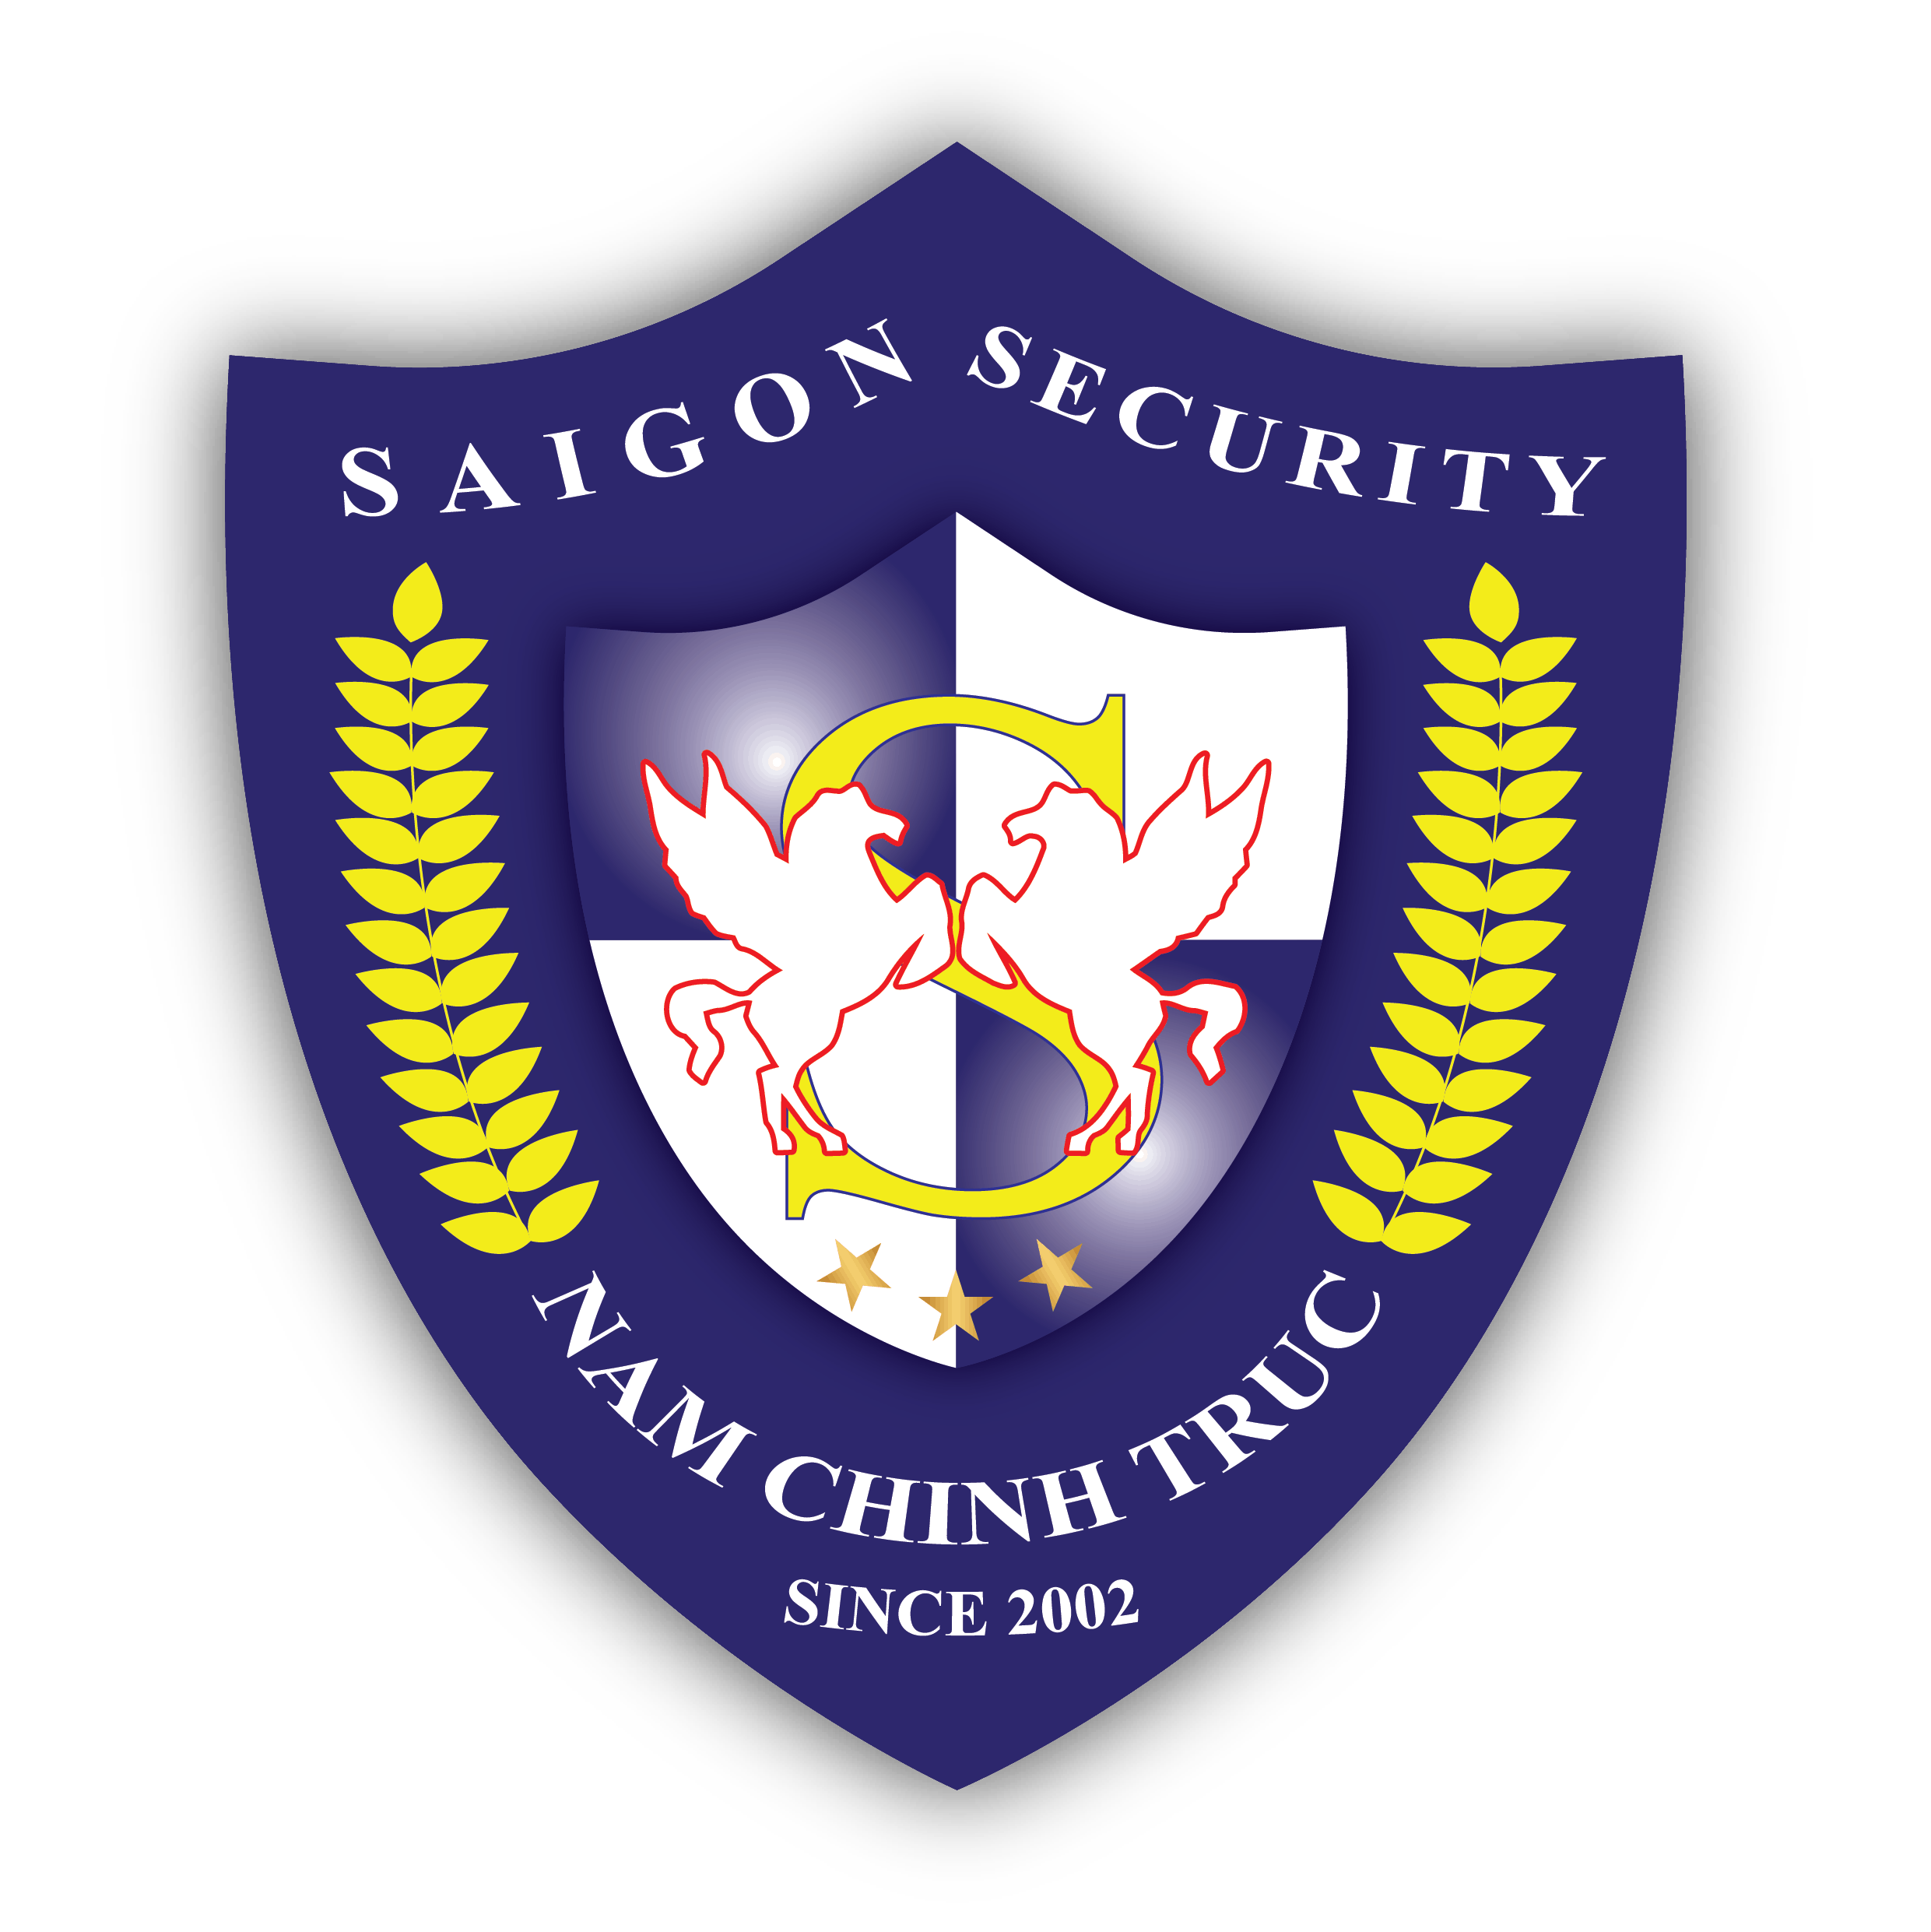 Phù hiệu công ty bảo vệ Saigon Security Nam Chính Trực